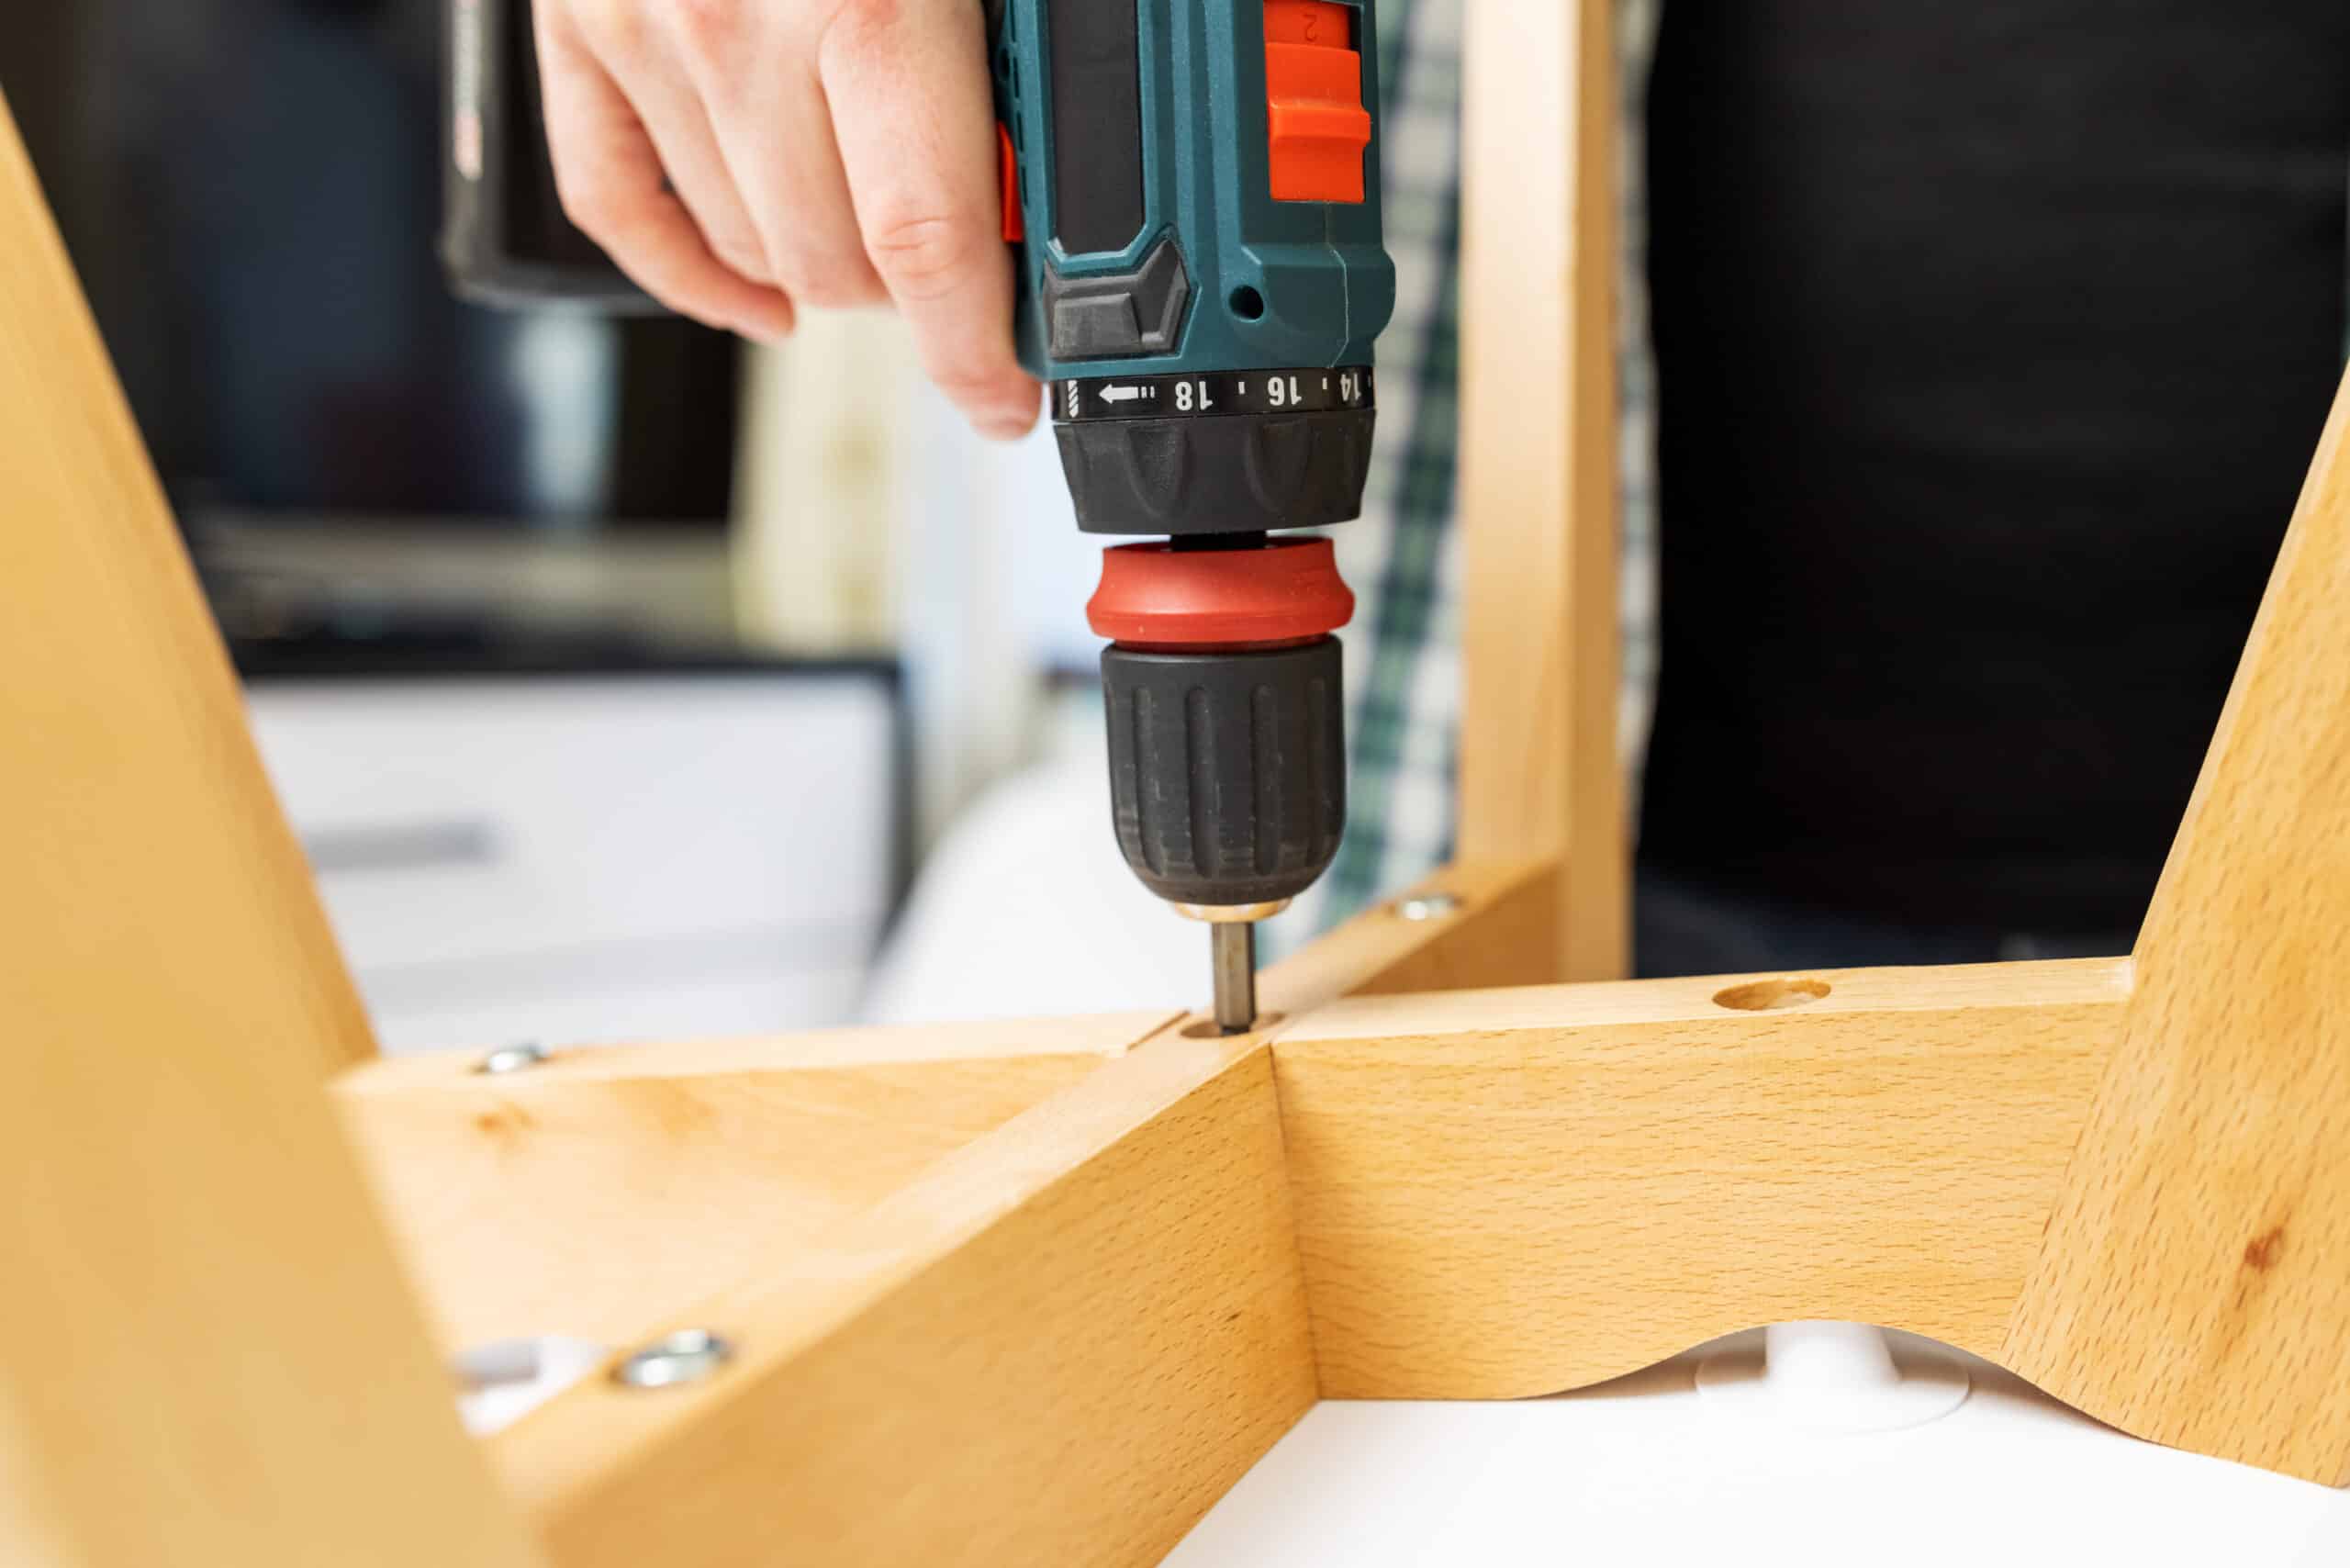 theprecisiontools.com : How do you screw into wood with a drill?